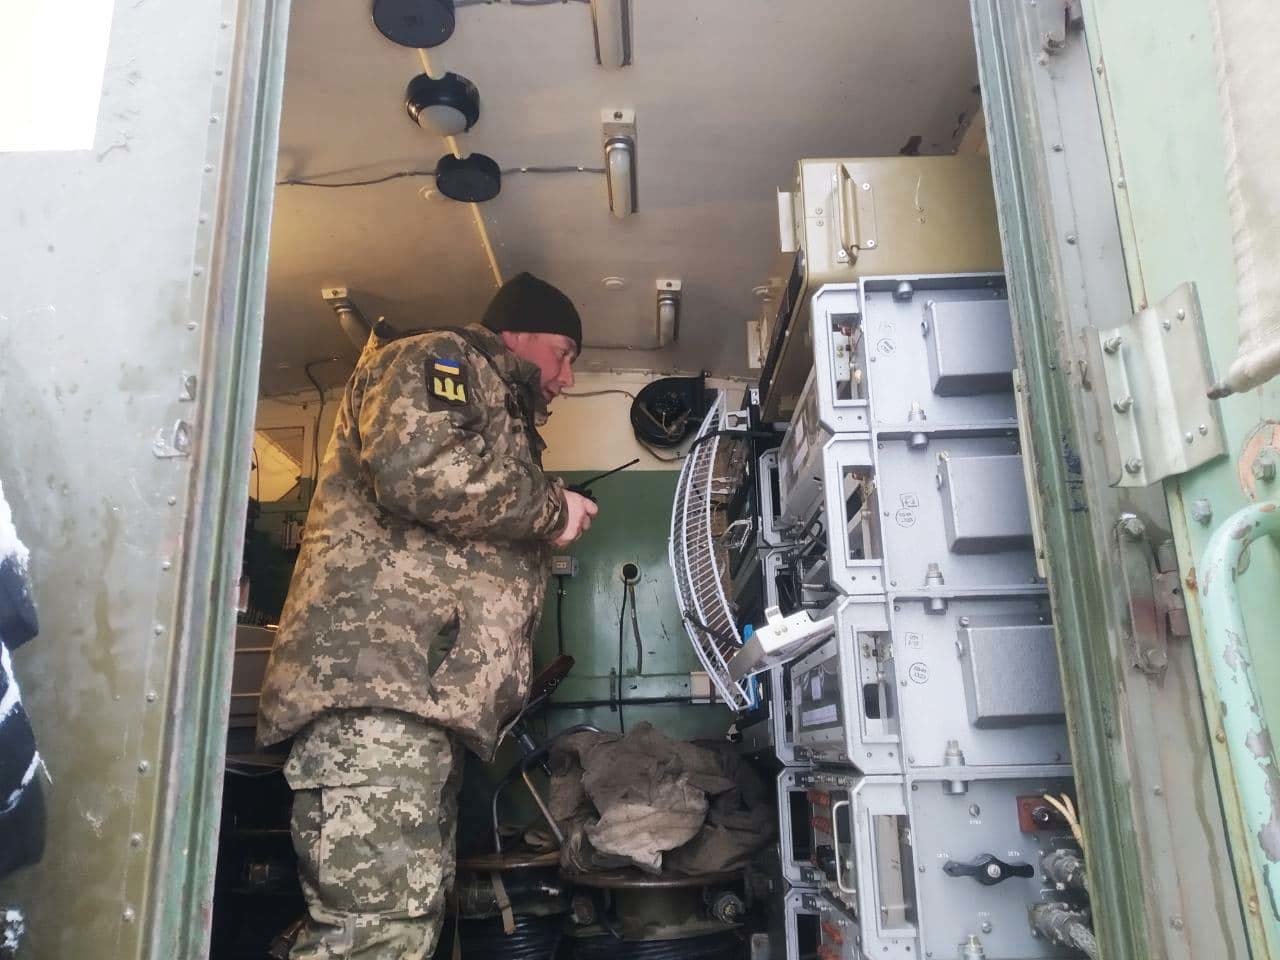 Гармати, танки та зв’язок: на Чернігівщині пройшли потужні військові навчання